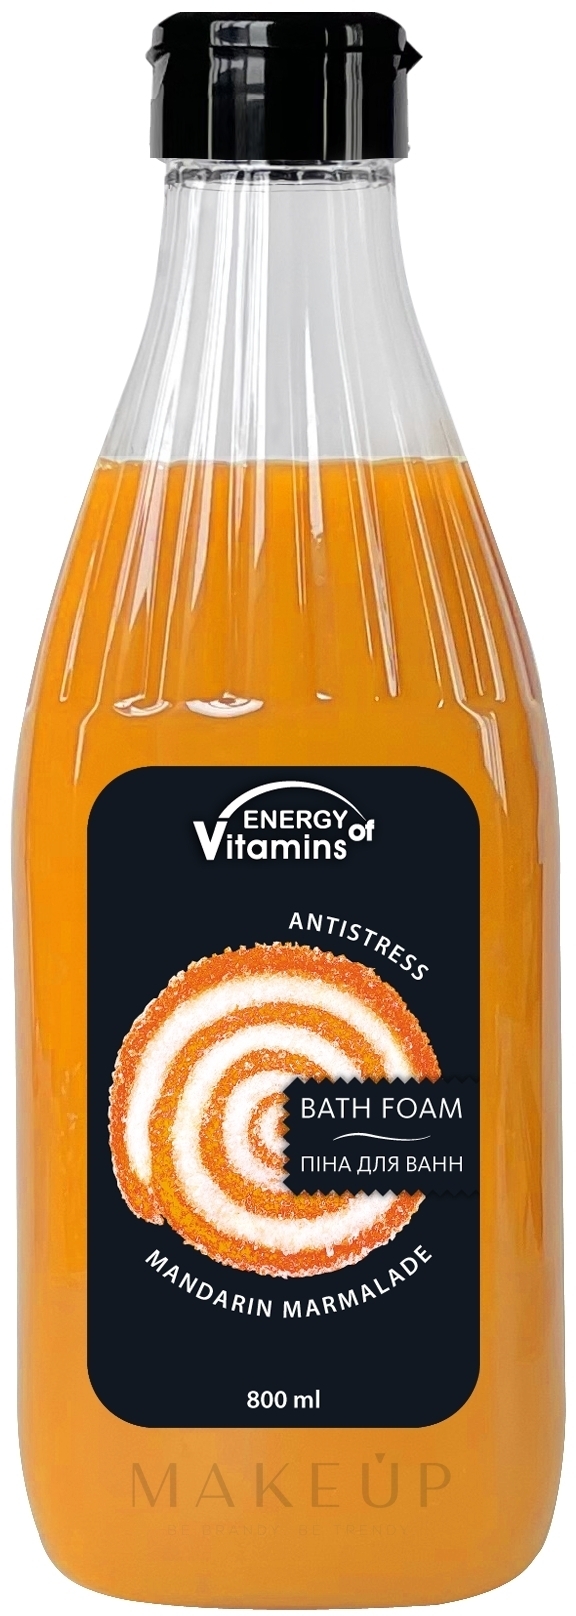 Entspannender Badeschaum mit Mandarinenduft - Leckere Geheimnisse Energy of Vitamins  — Foto 800 ml